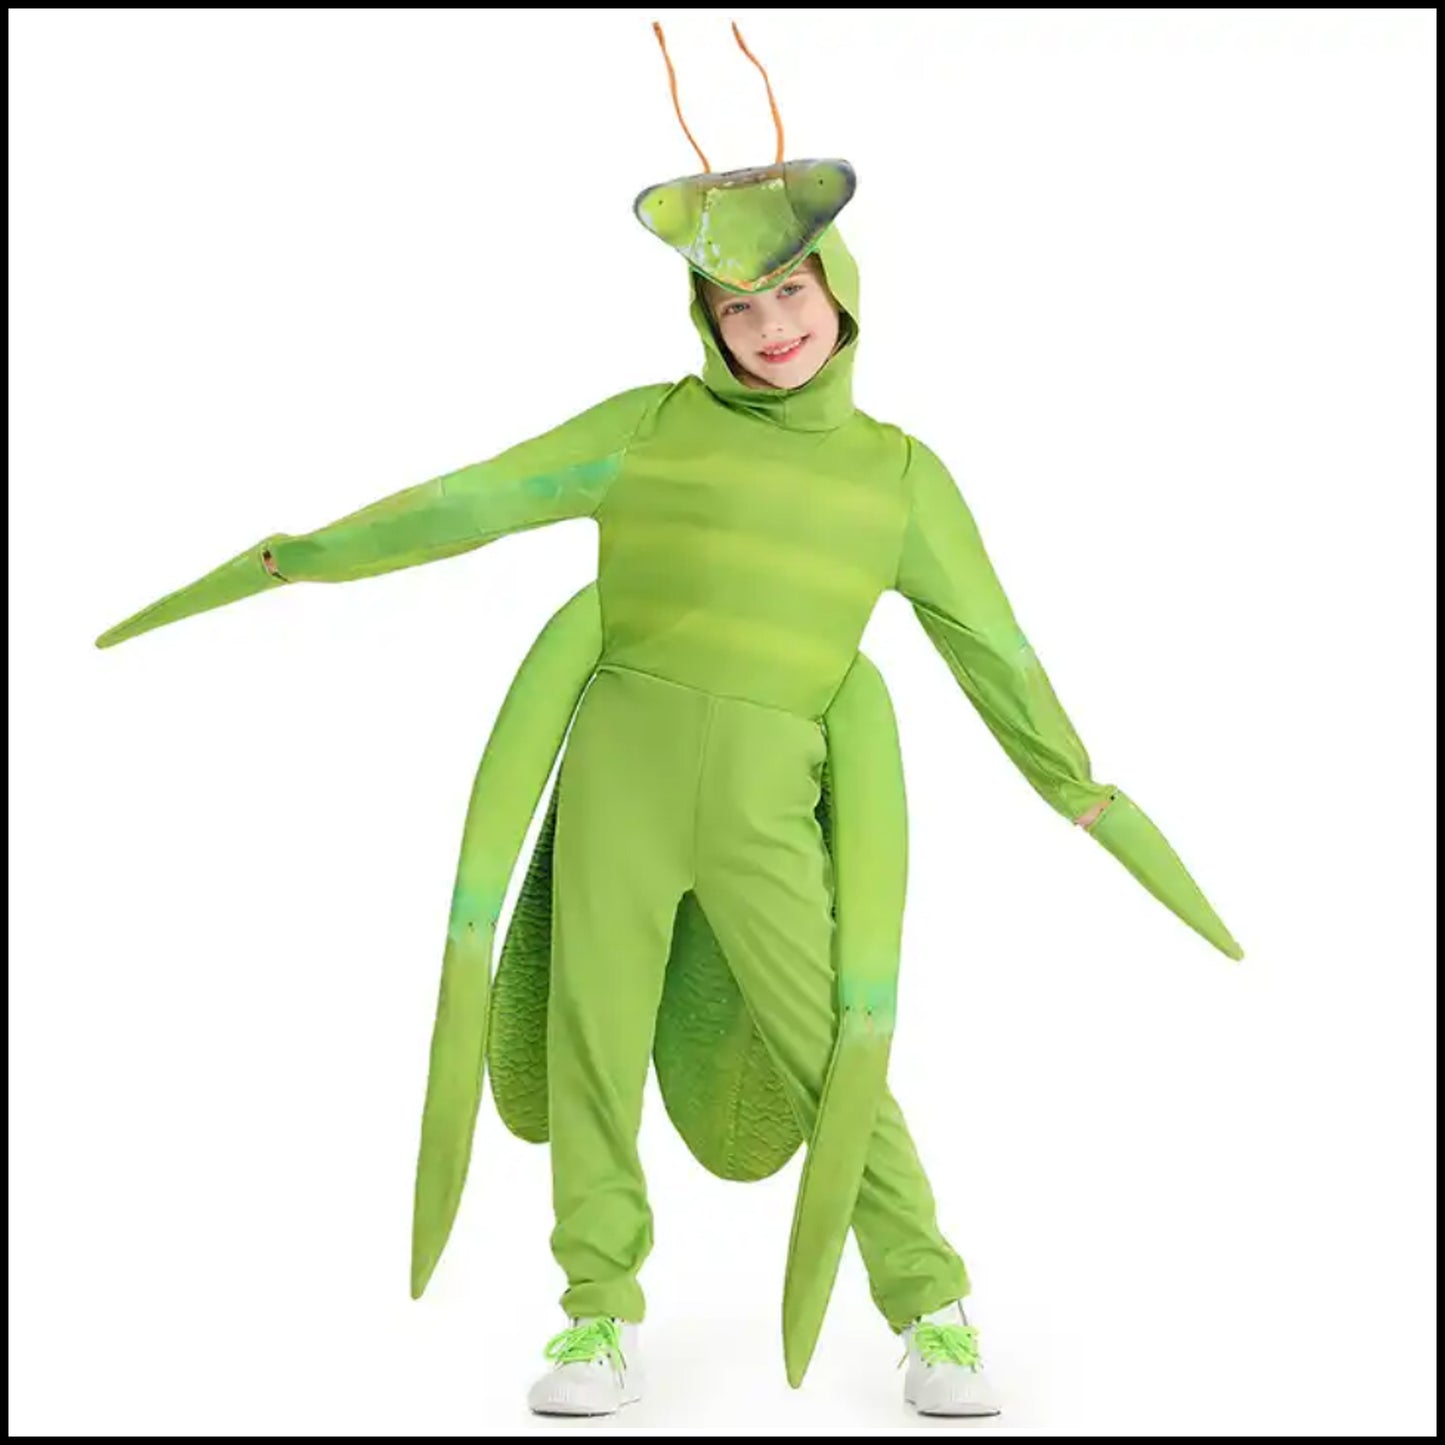 Praying Mantis Costume for Kids